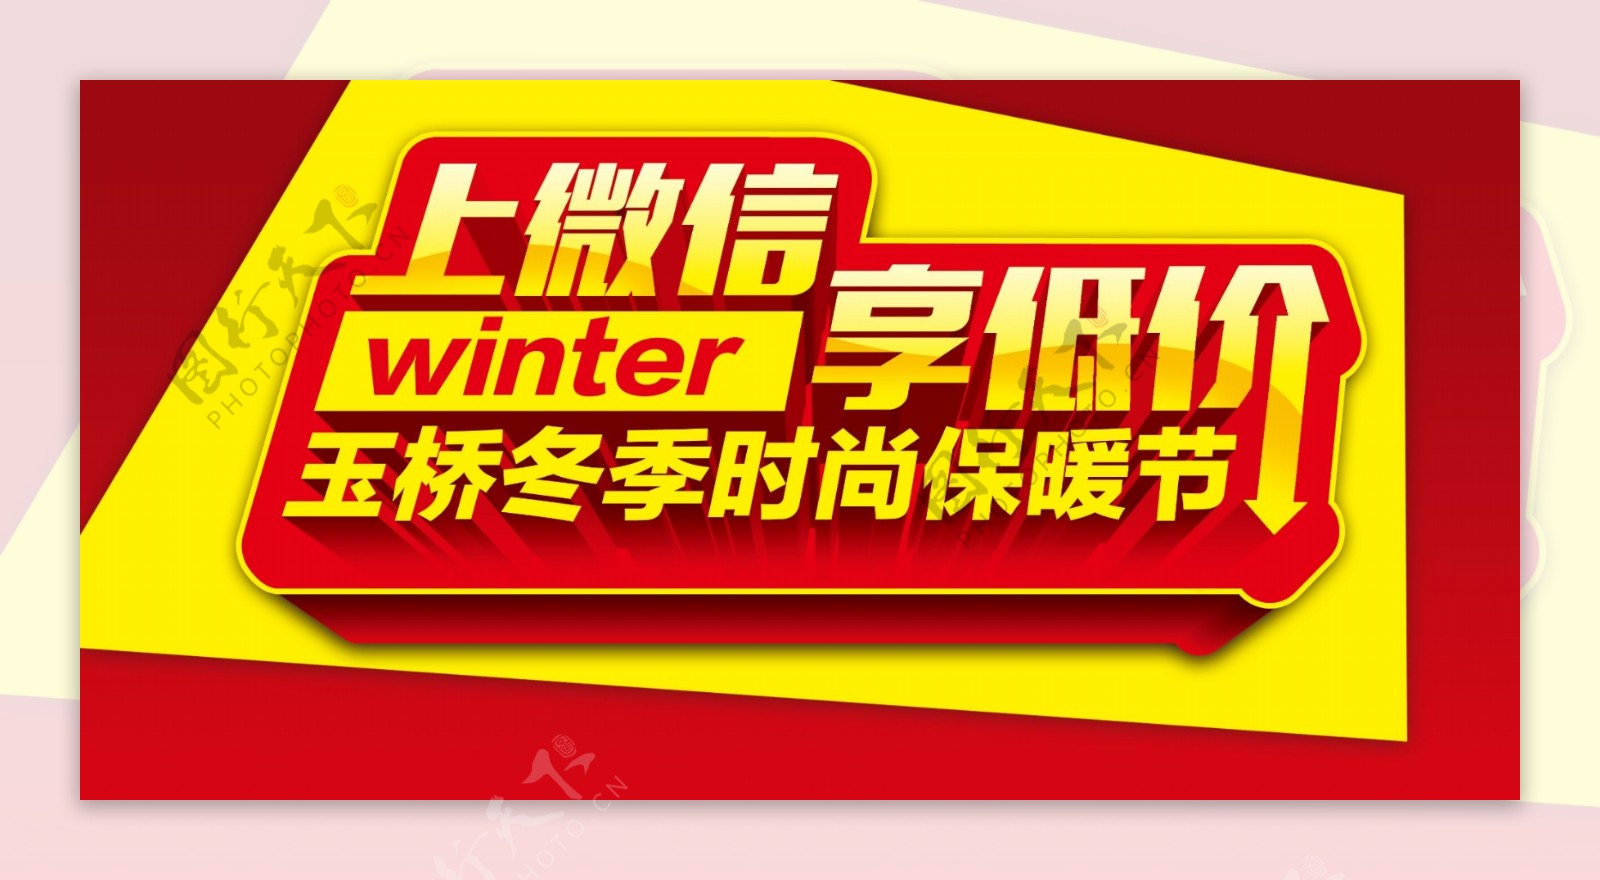 上微信享低价冬季时尚保暖节图片